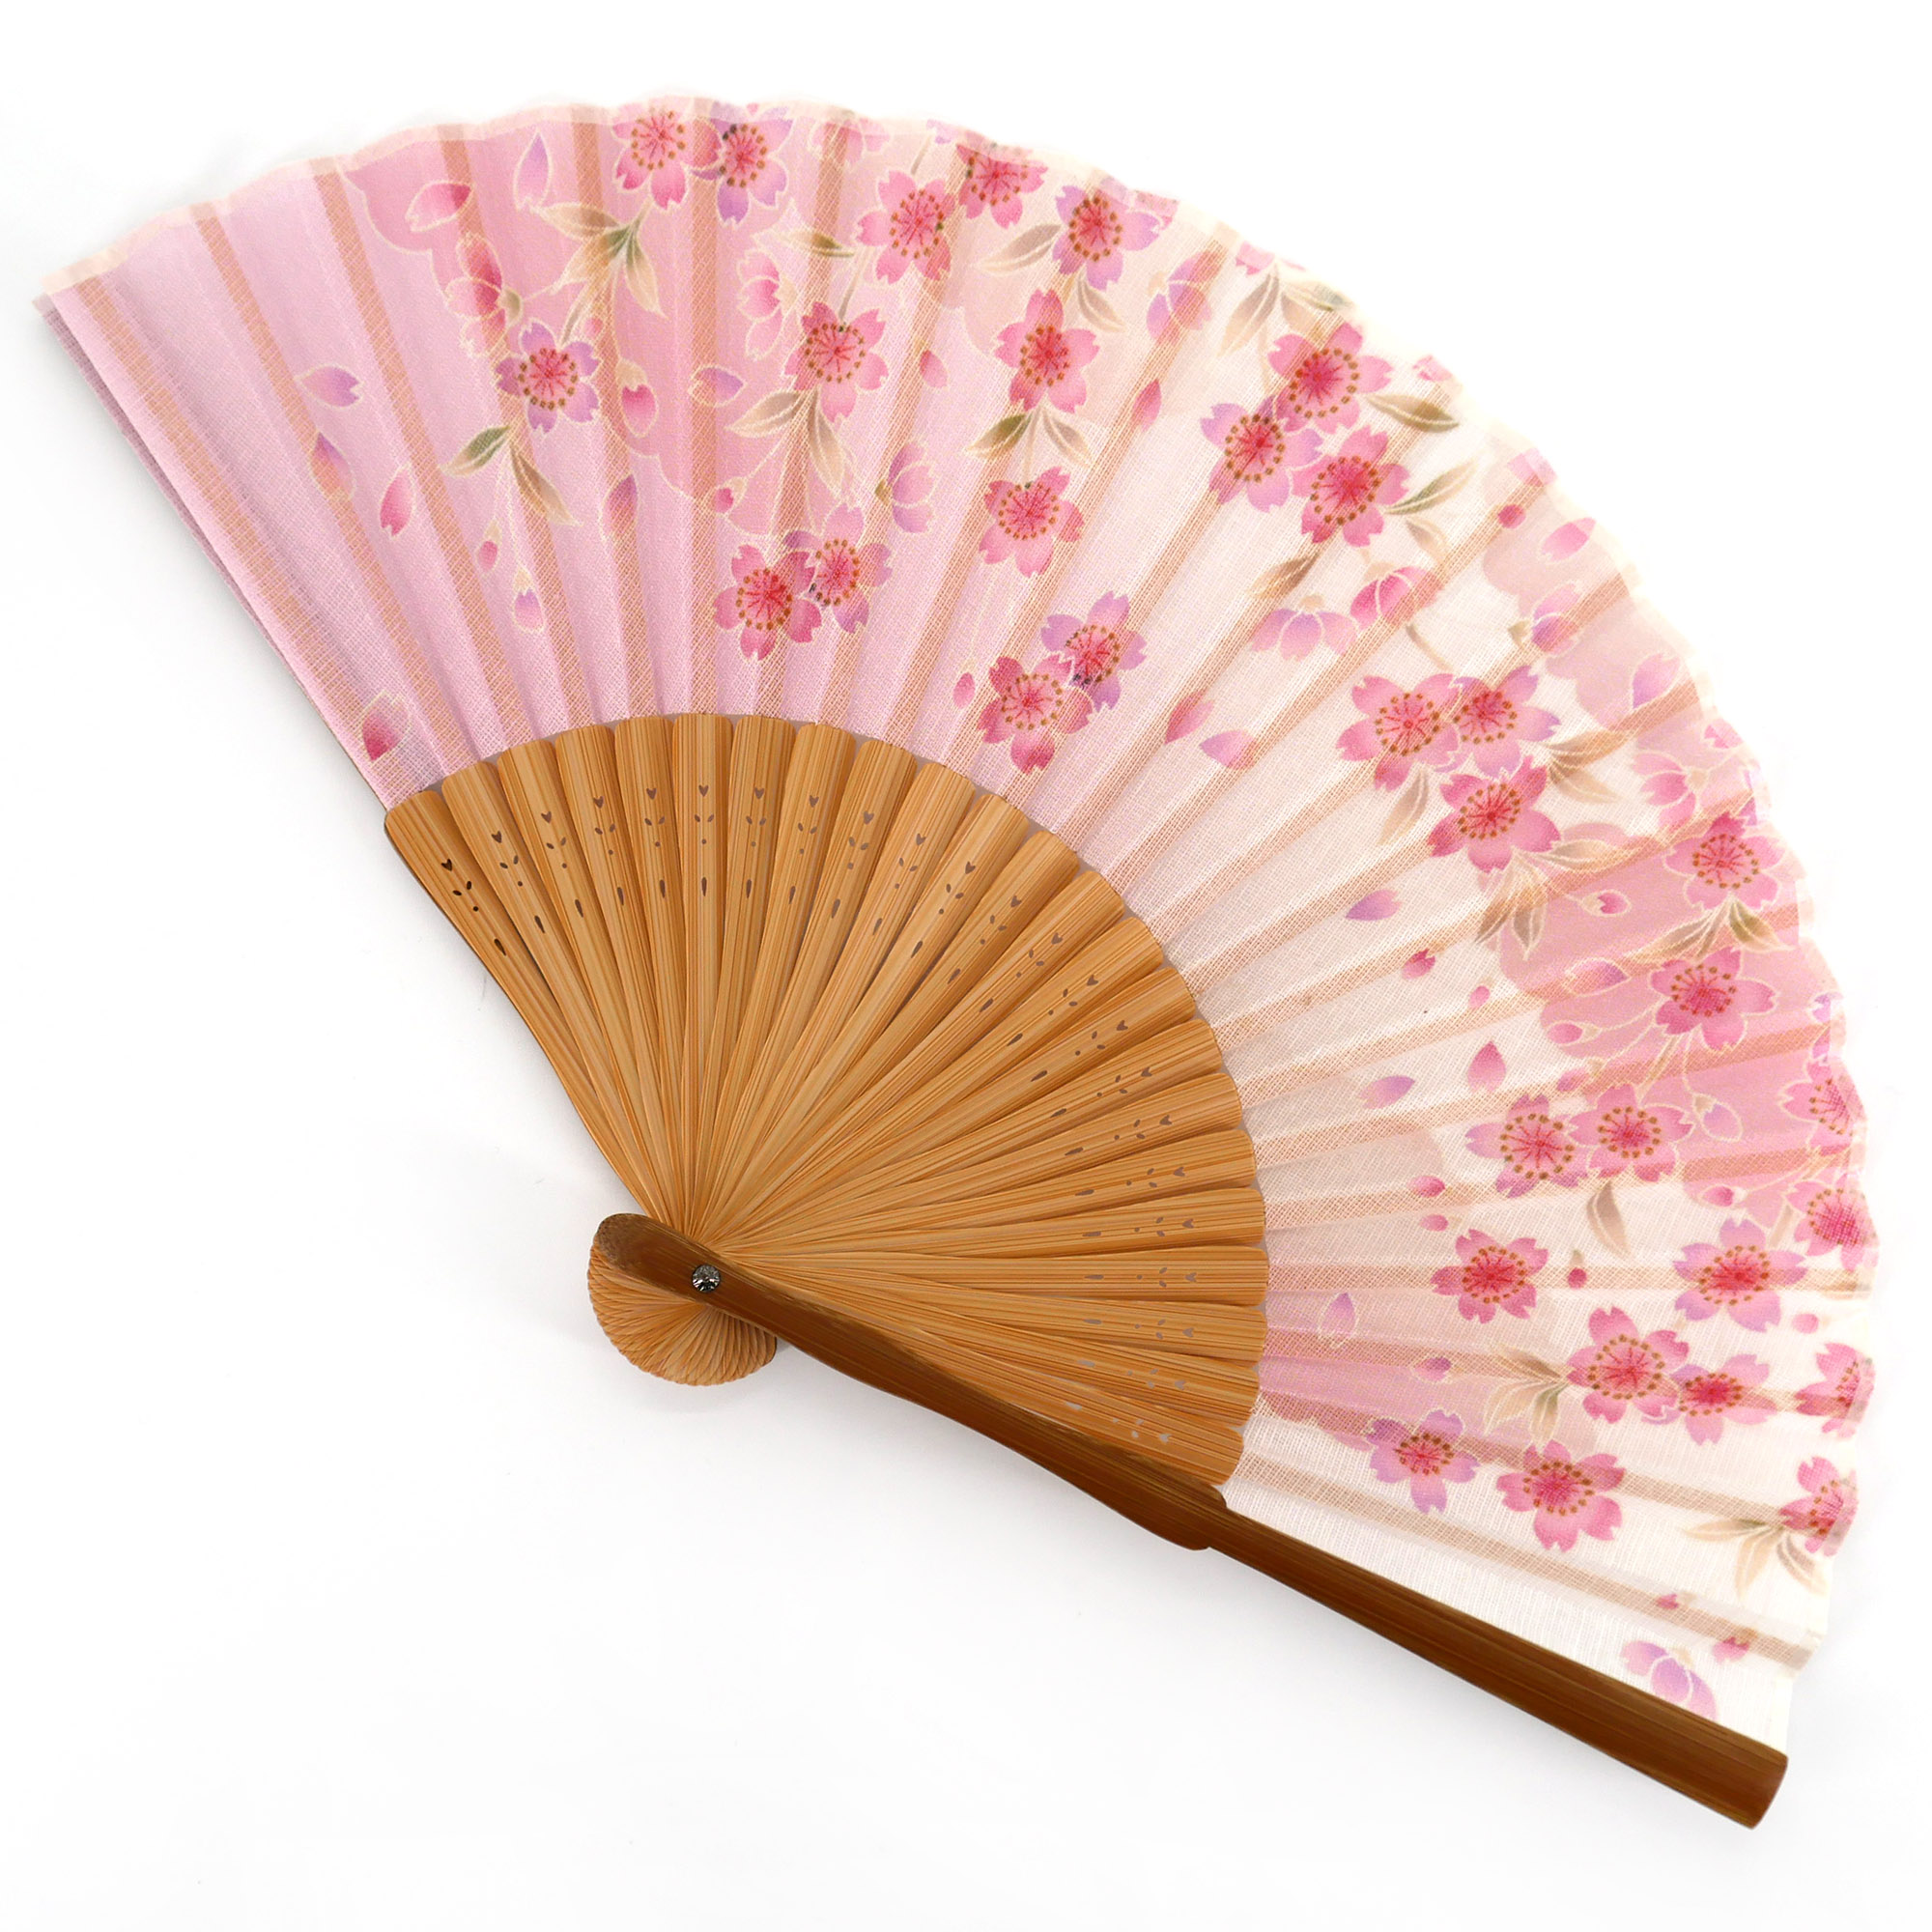 Ventaglio stile giapponese cinese in legno con disegni di fiori colorati